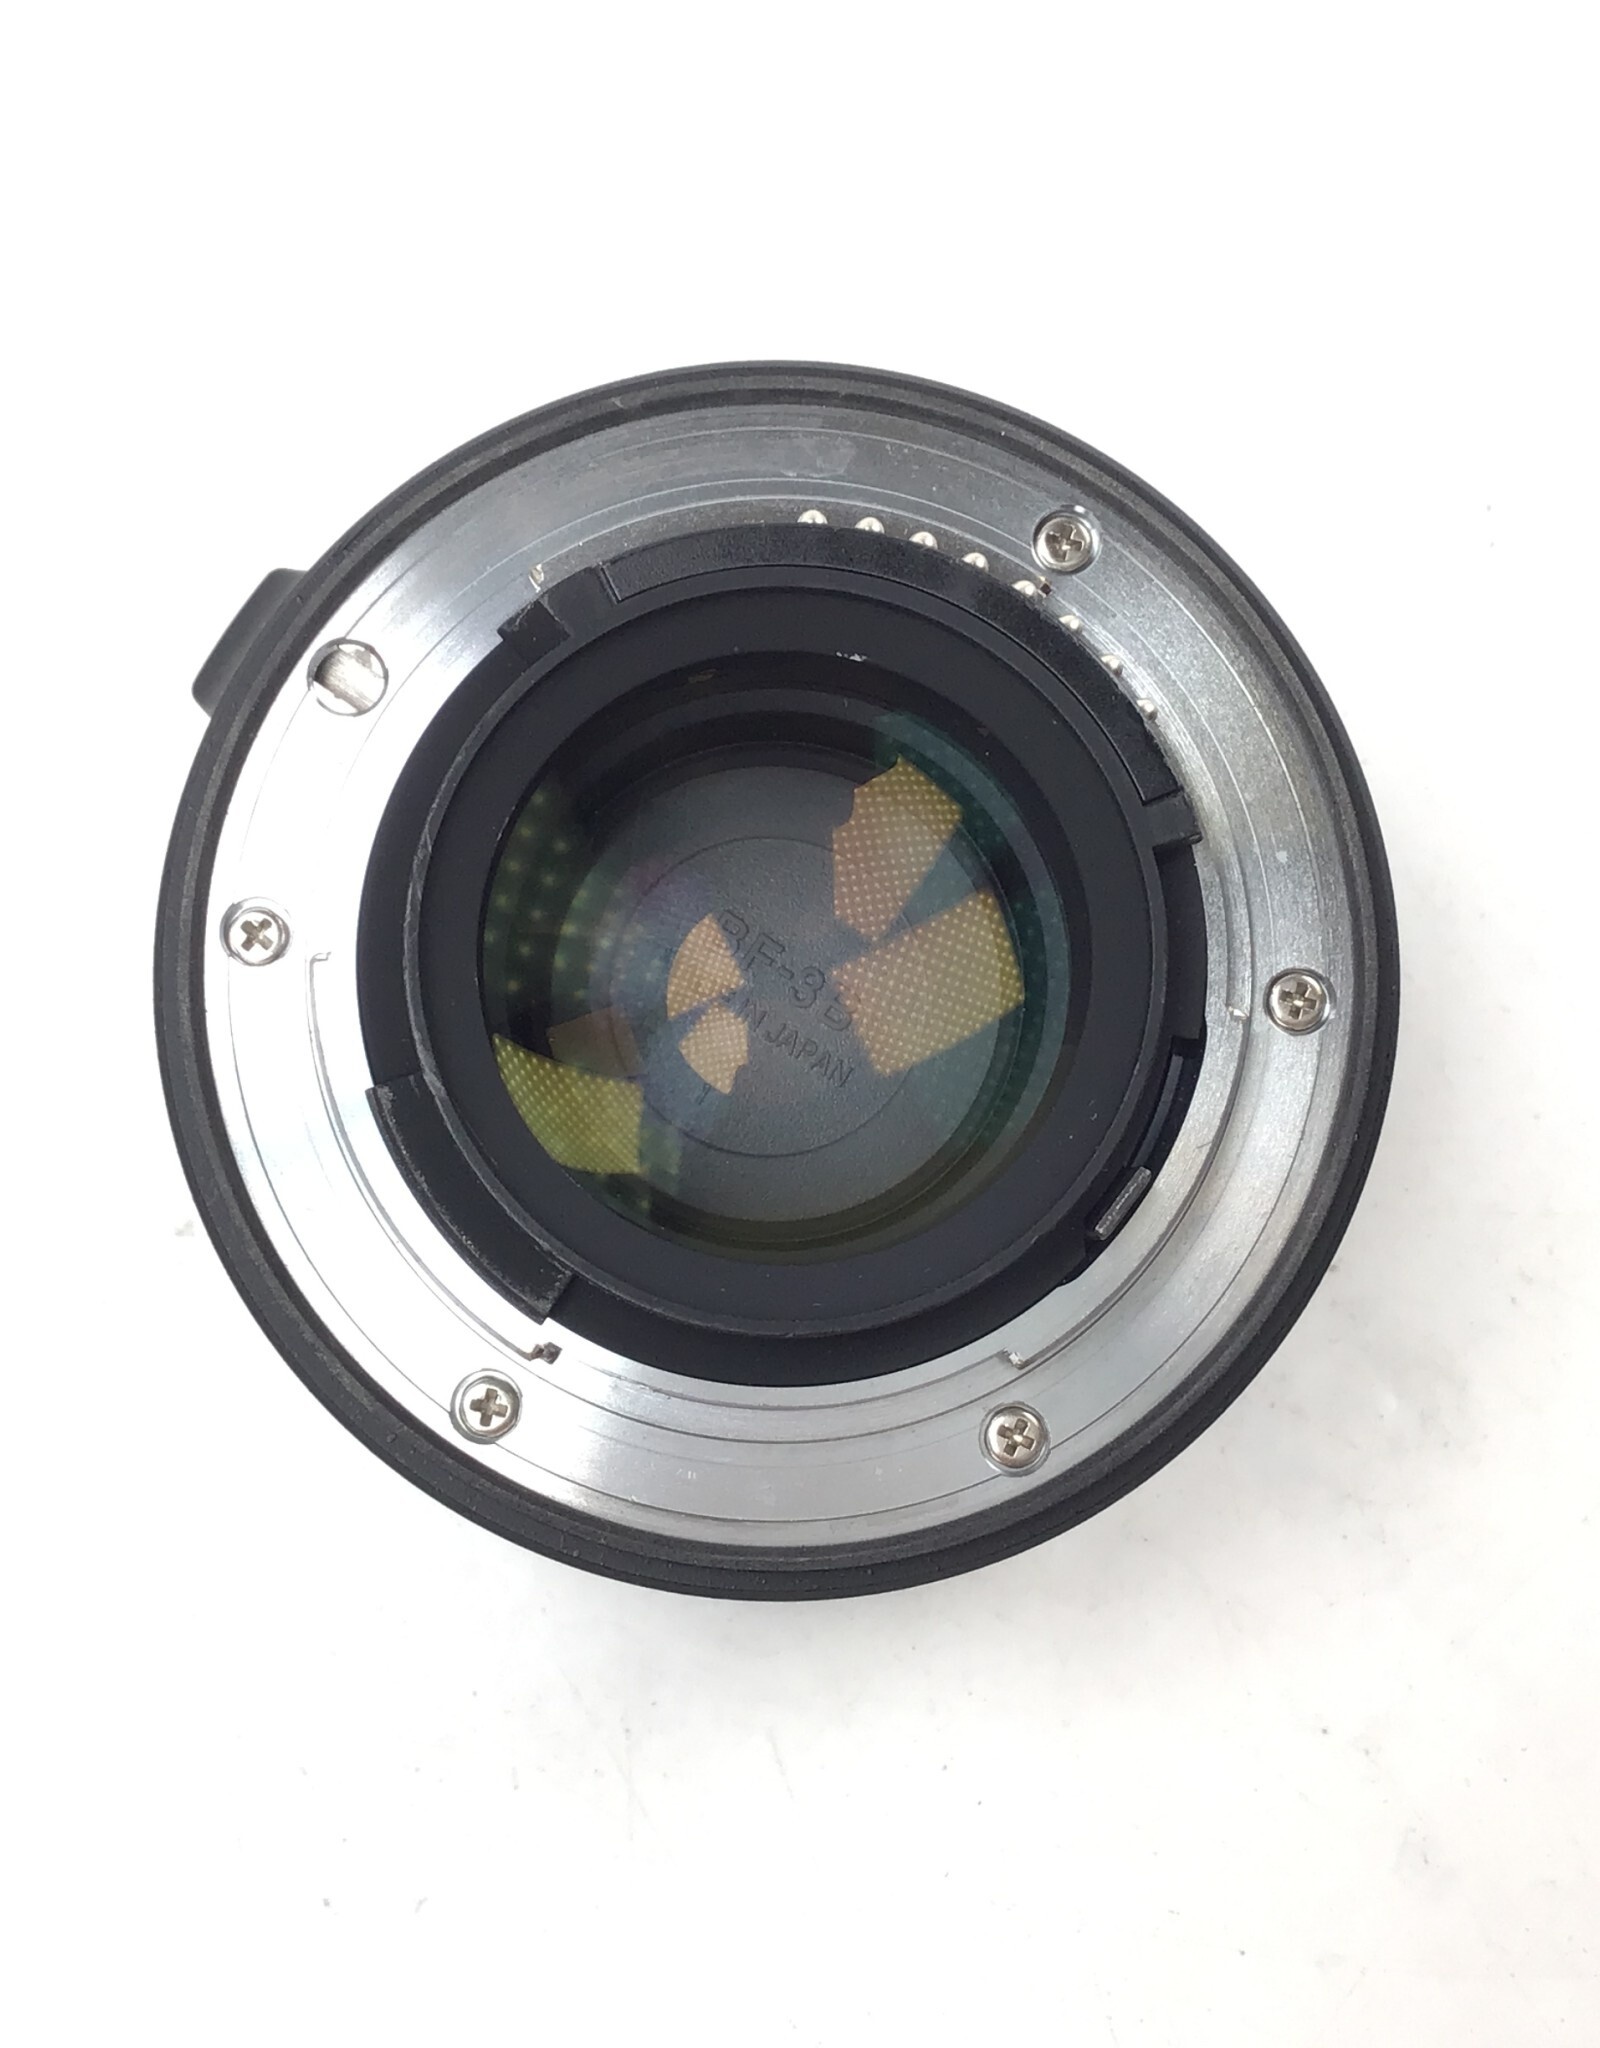 NIKON Nikon AF-S Teleconverter TC-14E III Lens in Box Used EX